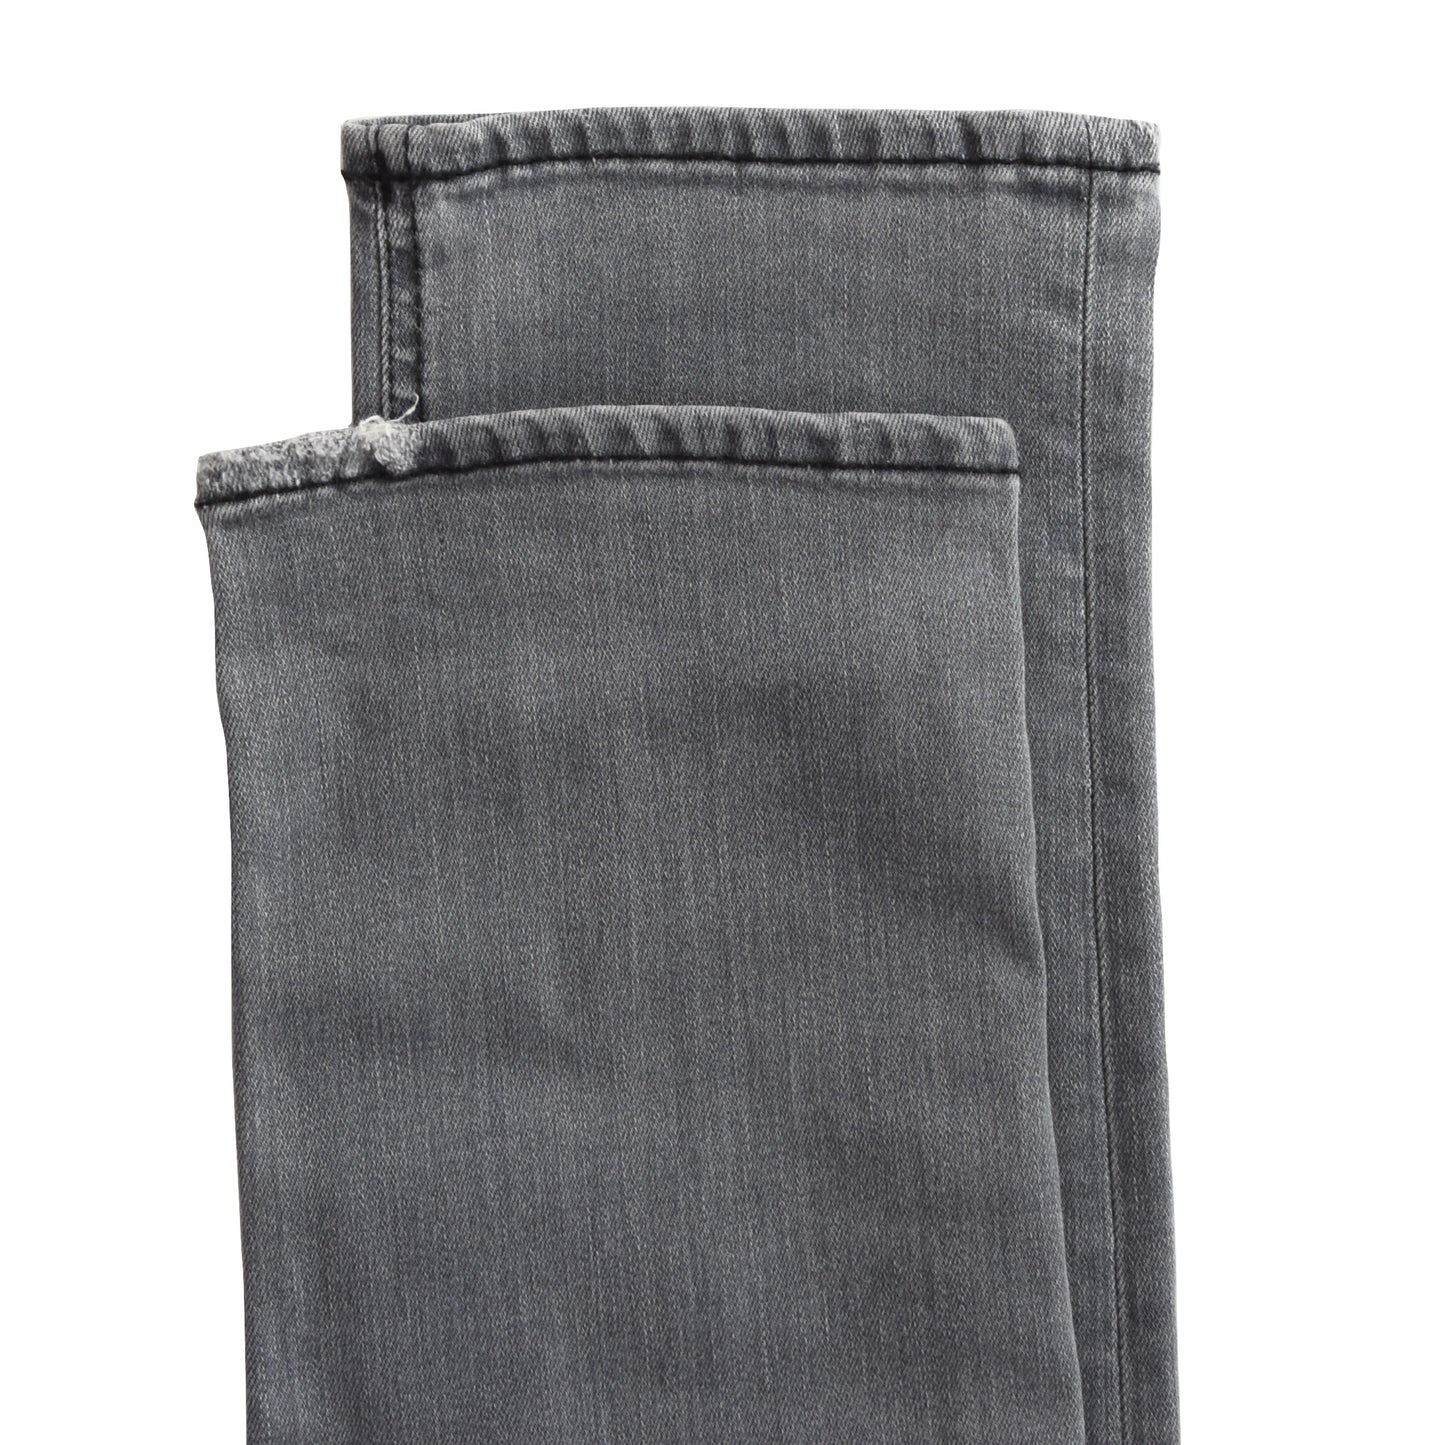 Dondup Jeans George Skinny Fit Größe W36 - Grau